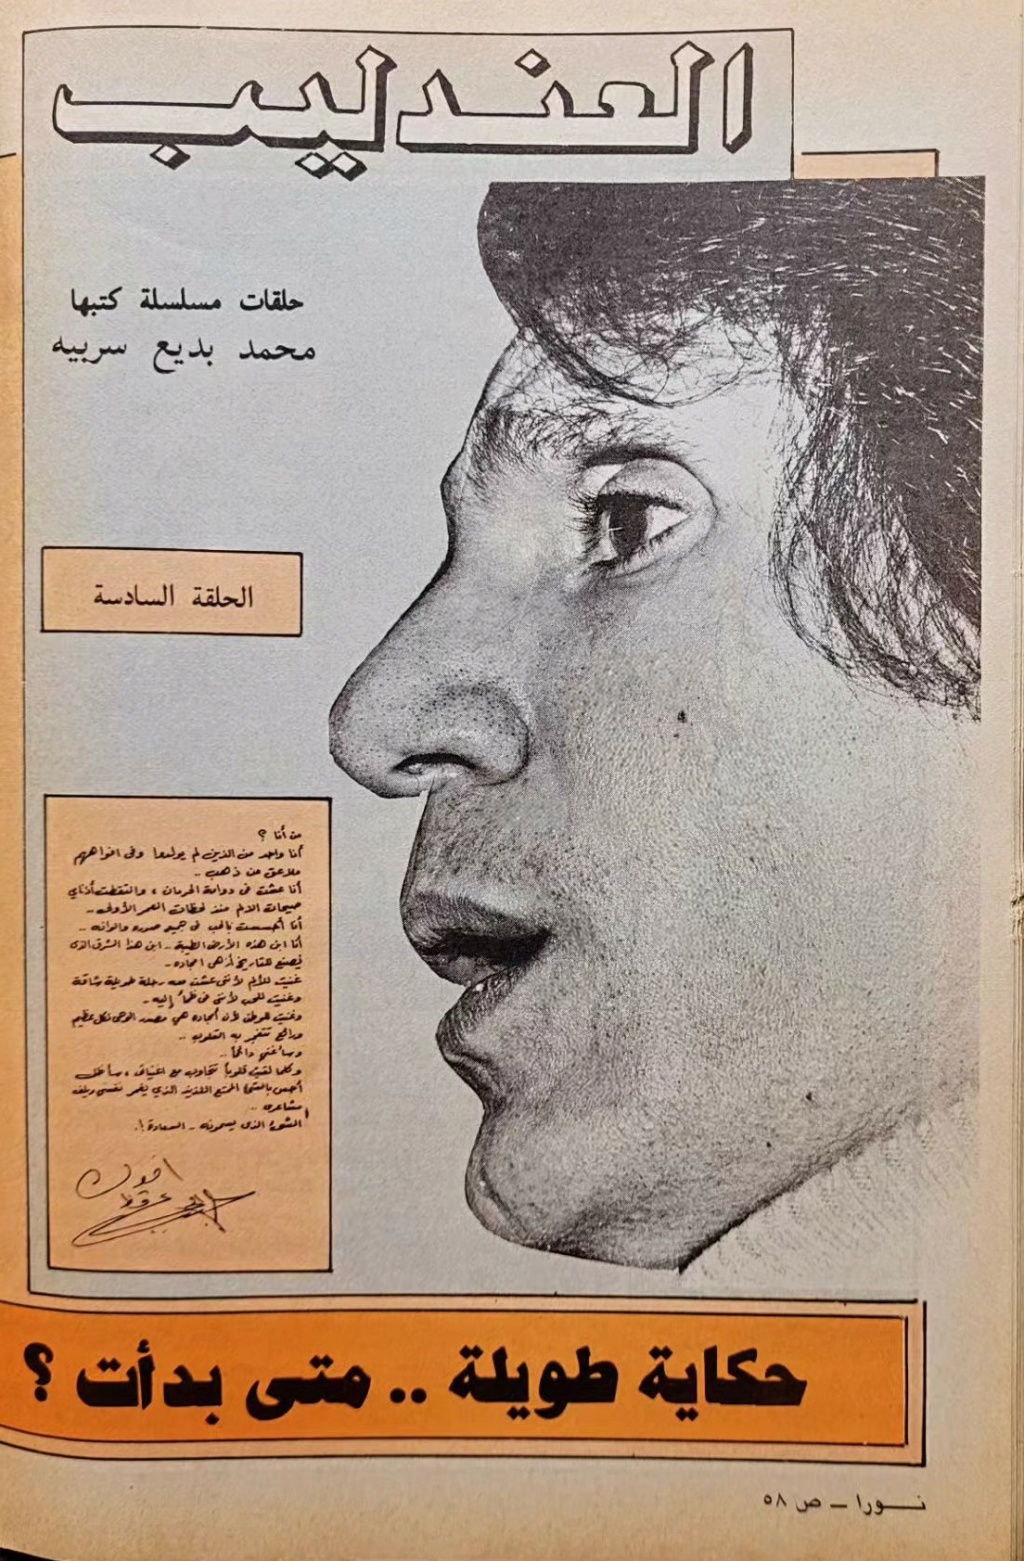 1977 - مقال صحفي : حكاية طويلة .. متى بدأت ؟ بين العندليب وسعاد حسني 1983 م 1103